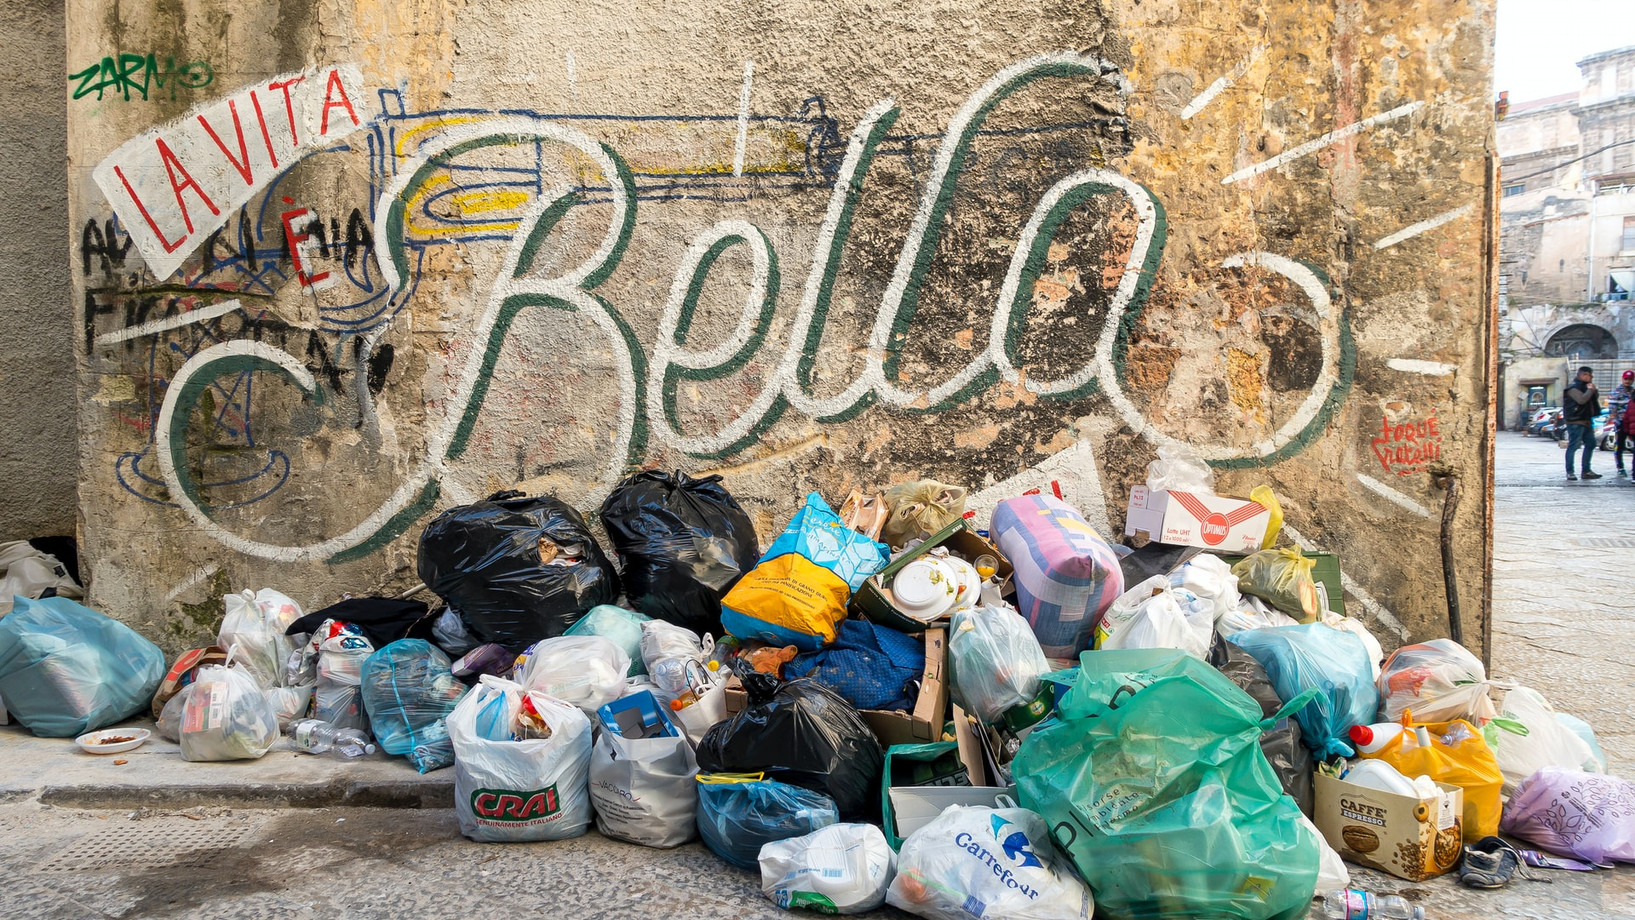 Müllberg vor Hauswand mit dem Graffiti "La vita Bella"